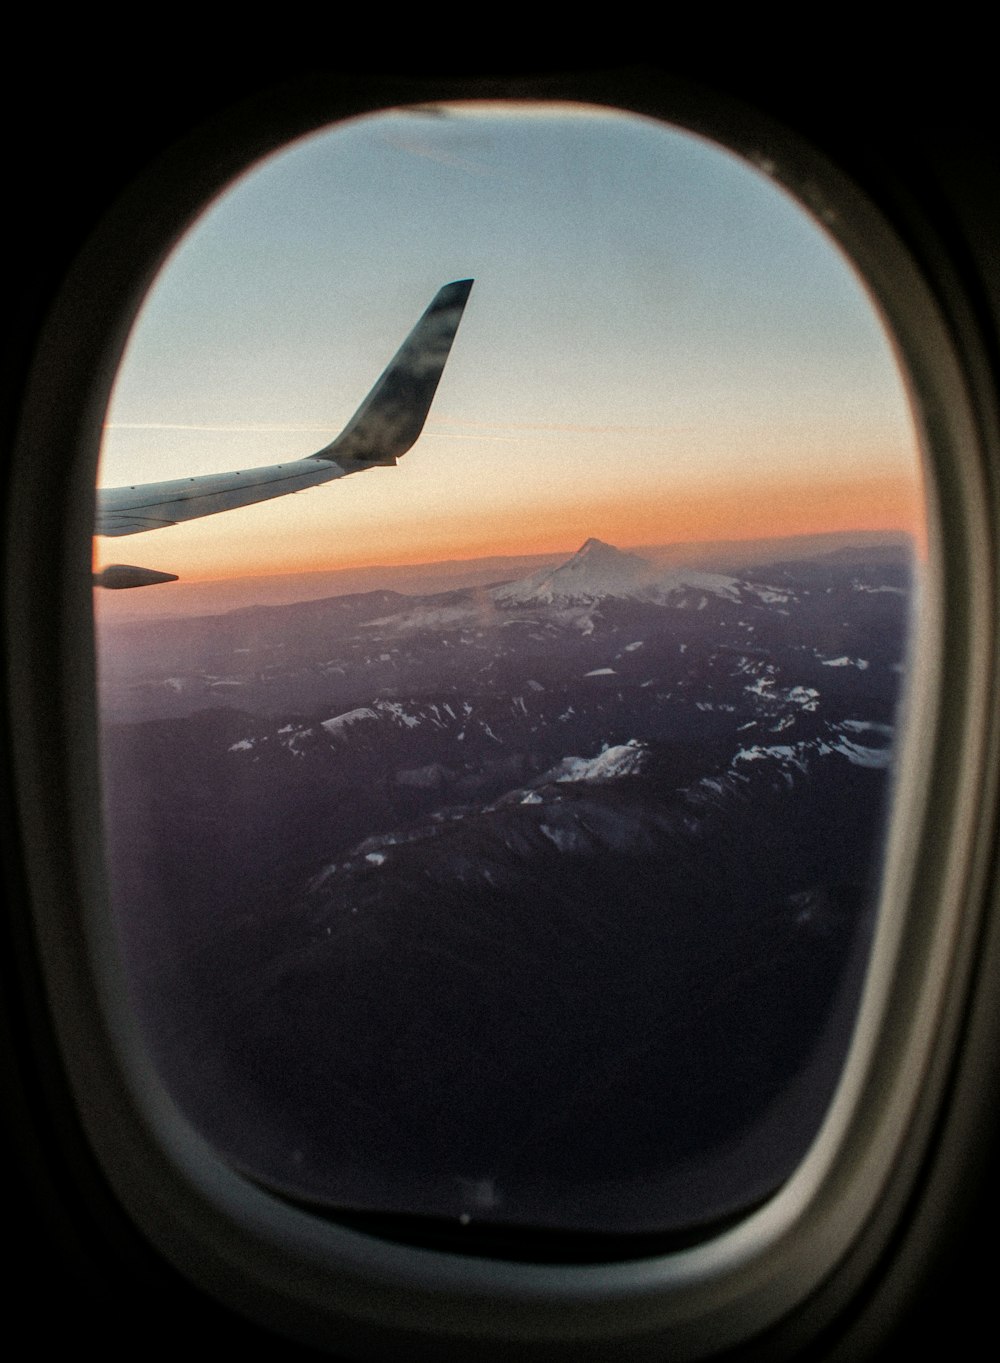 vista da janela do avião das montanhas cobertas de neve durante o dia